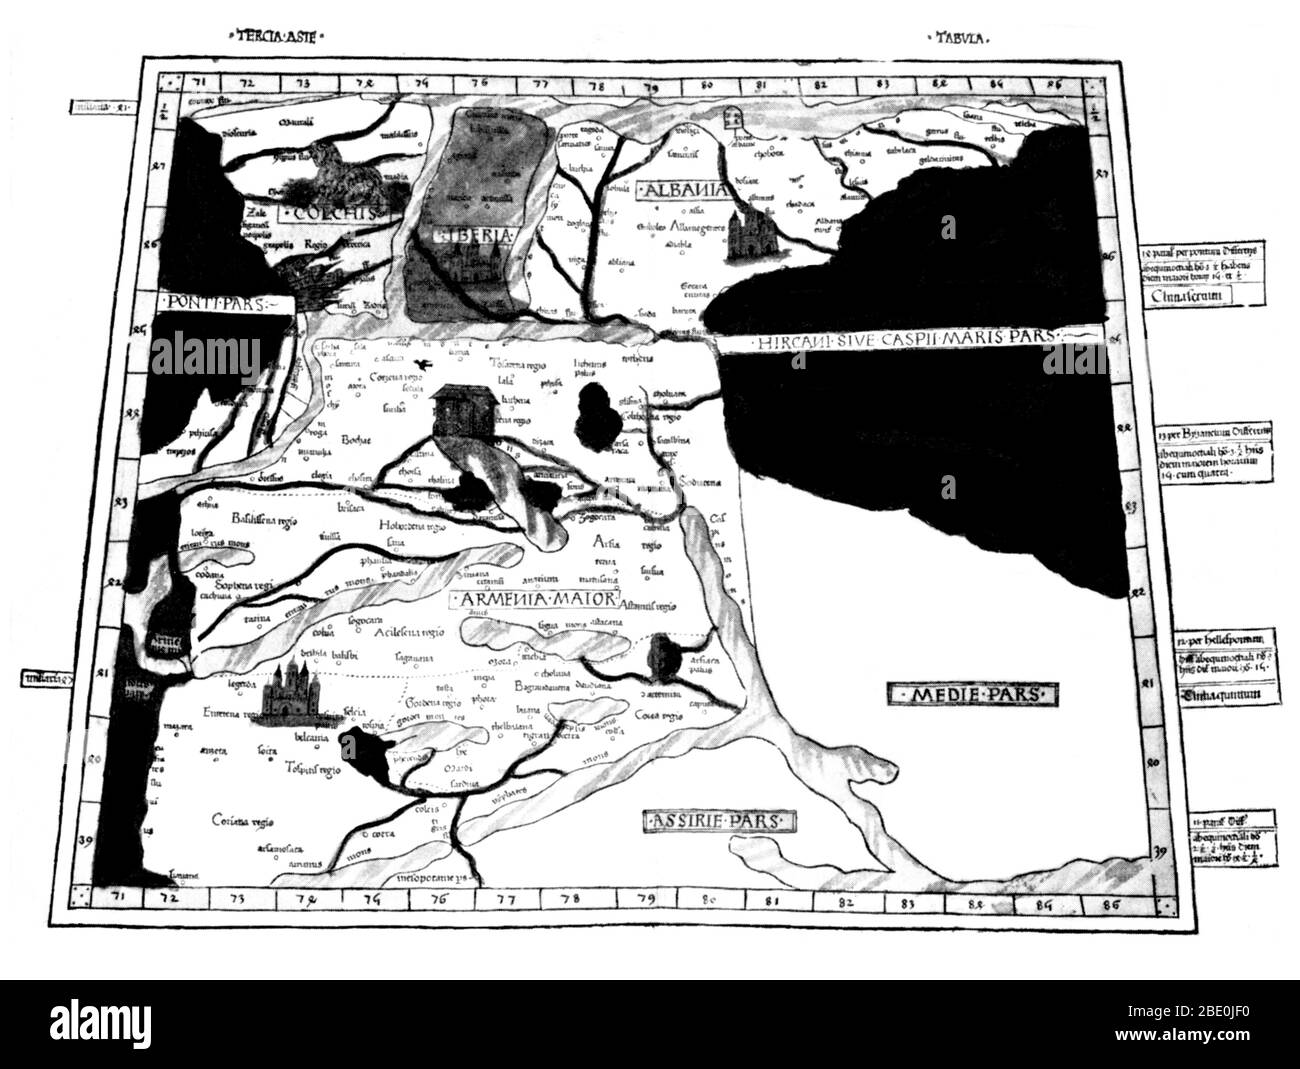 Ptolemäus Karte von Armenien mit der Arche Noah auf dem Berg Ararat war auf der Beschreibung von Ptolemäus buch Geographia enthalten, geschrieben 150 AD. Obwohl verbindlich Karten nie gefunden wurden, die geographia enthält Tausende von Referenzen zu den verschiedenen Teilen der alten Welt, mit Koordinaten für die meisten, die kartographen Ptolemäus Weltbild zu rekonstruieren, wenn das Manuskript wurde um 1300 N.CHR. entdeckt. Der vielleicht wichtigste Beitrag von Ptolemäus und seine Karten ist der erste Verwendungen von Längs- und Längenkoordinaten Linien und die Angabe der terrestrischen Standorten durch himmlische obse Stockfoto